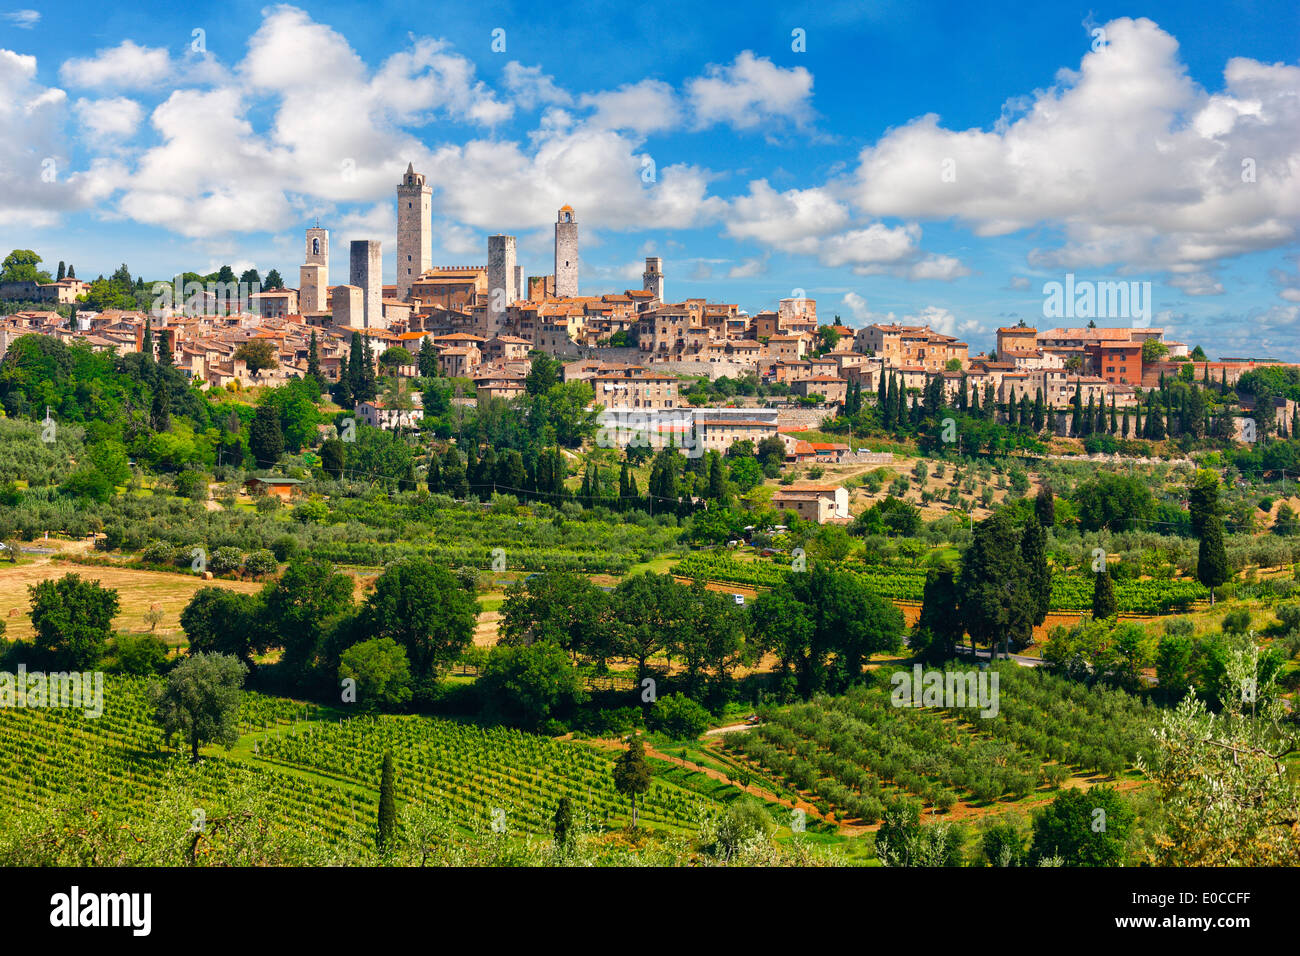 La città medievale di San Gimignano in Toscana, Italia. Una vista panoramica della città collinare con torri e belle nuvole. Foto Stock